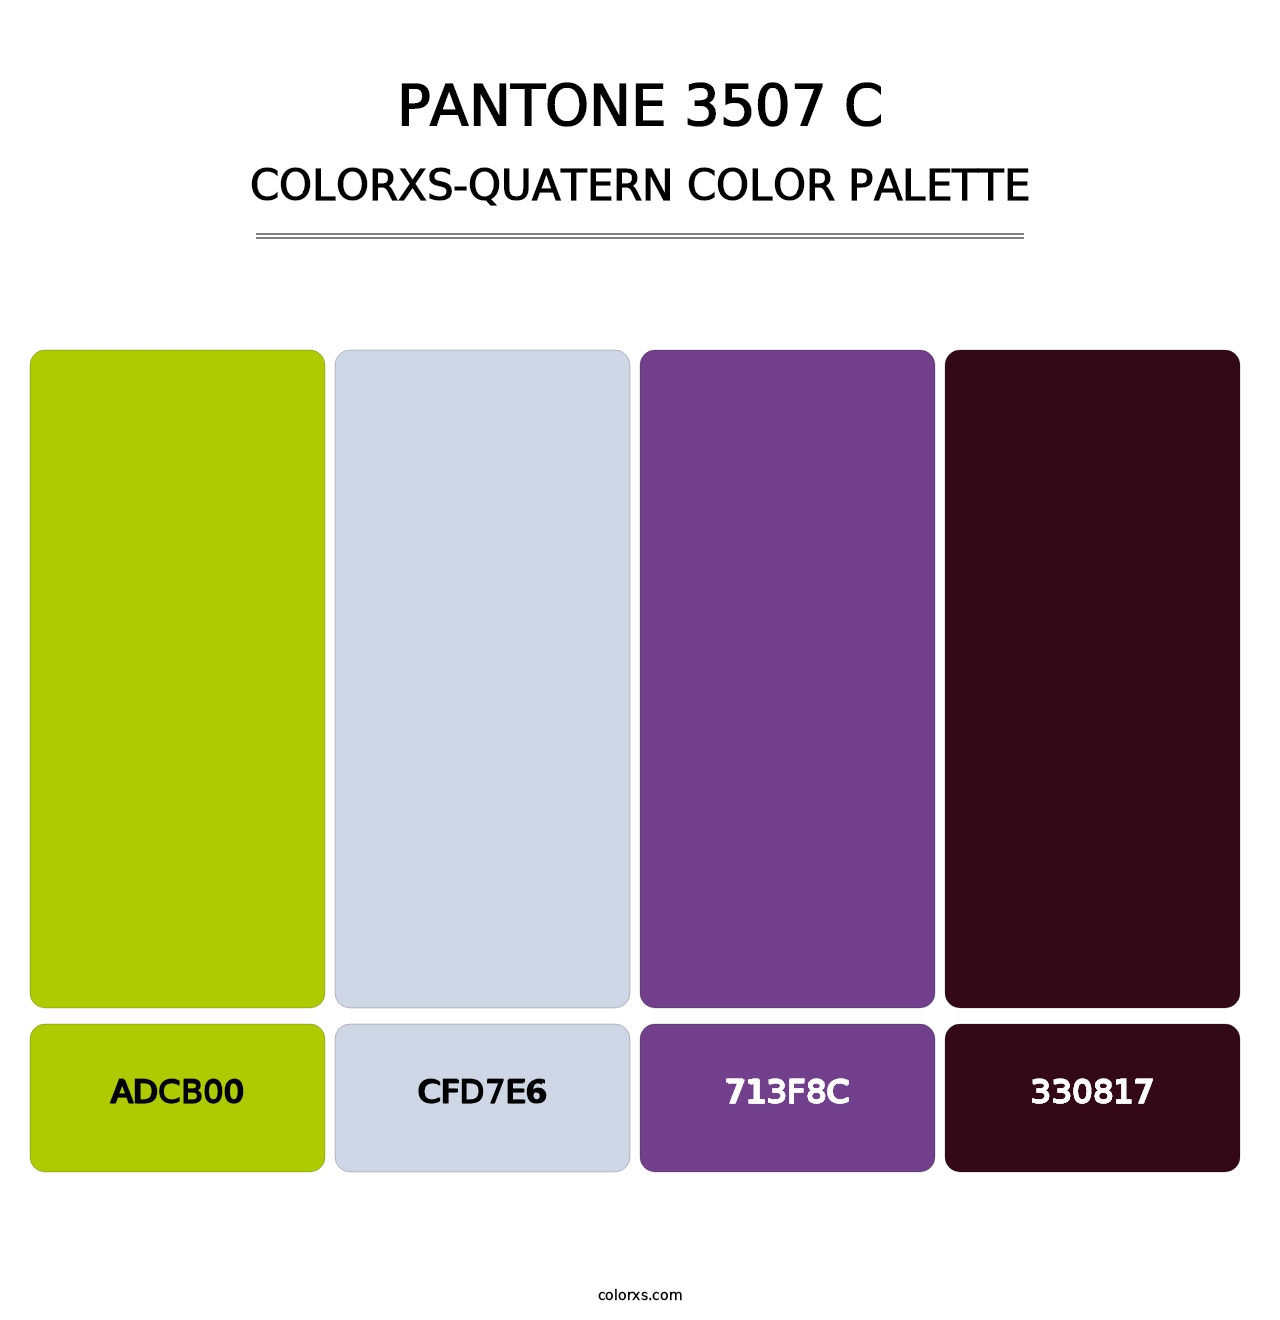 PANTONE 3507 C - Colorxs Quatern Palette